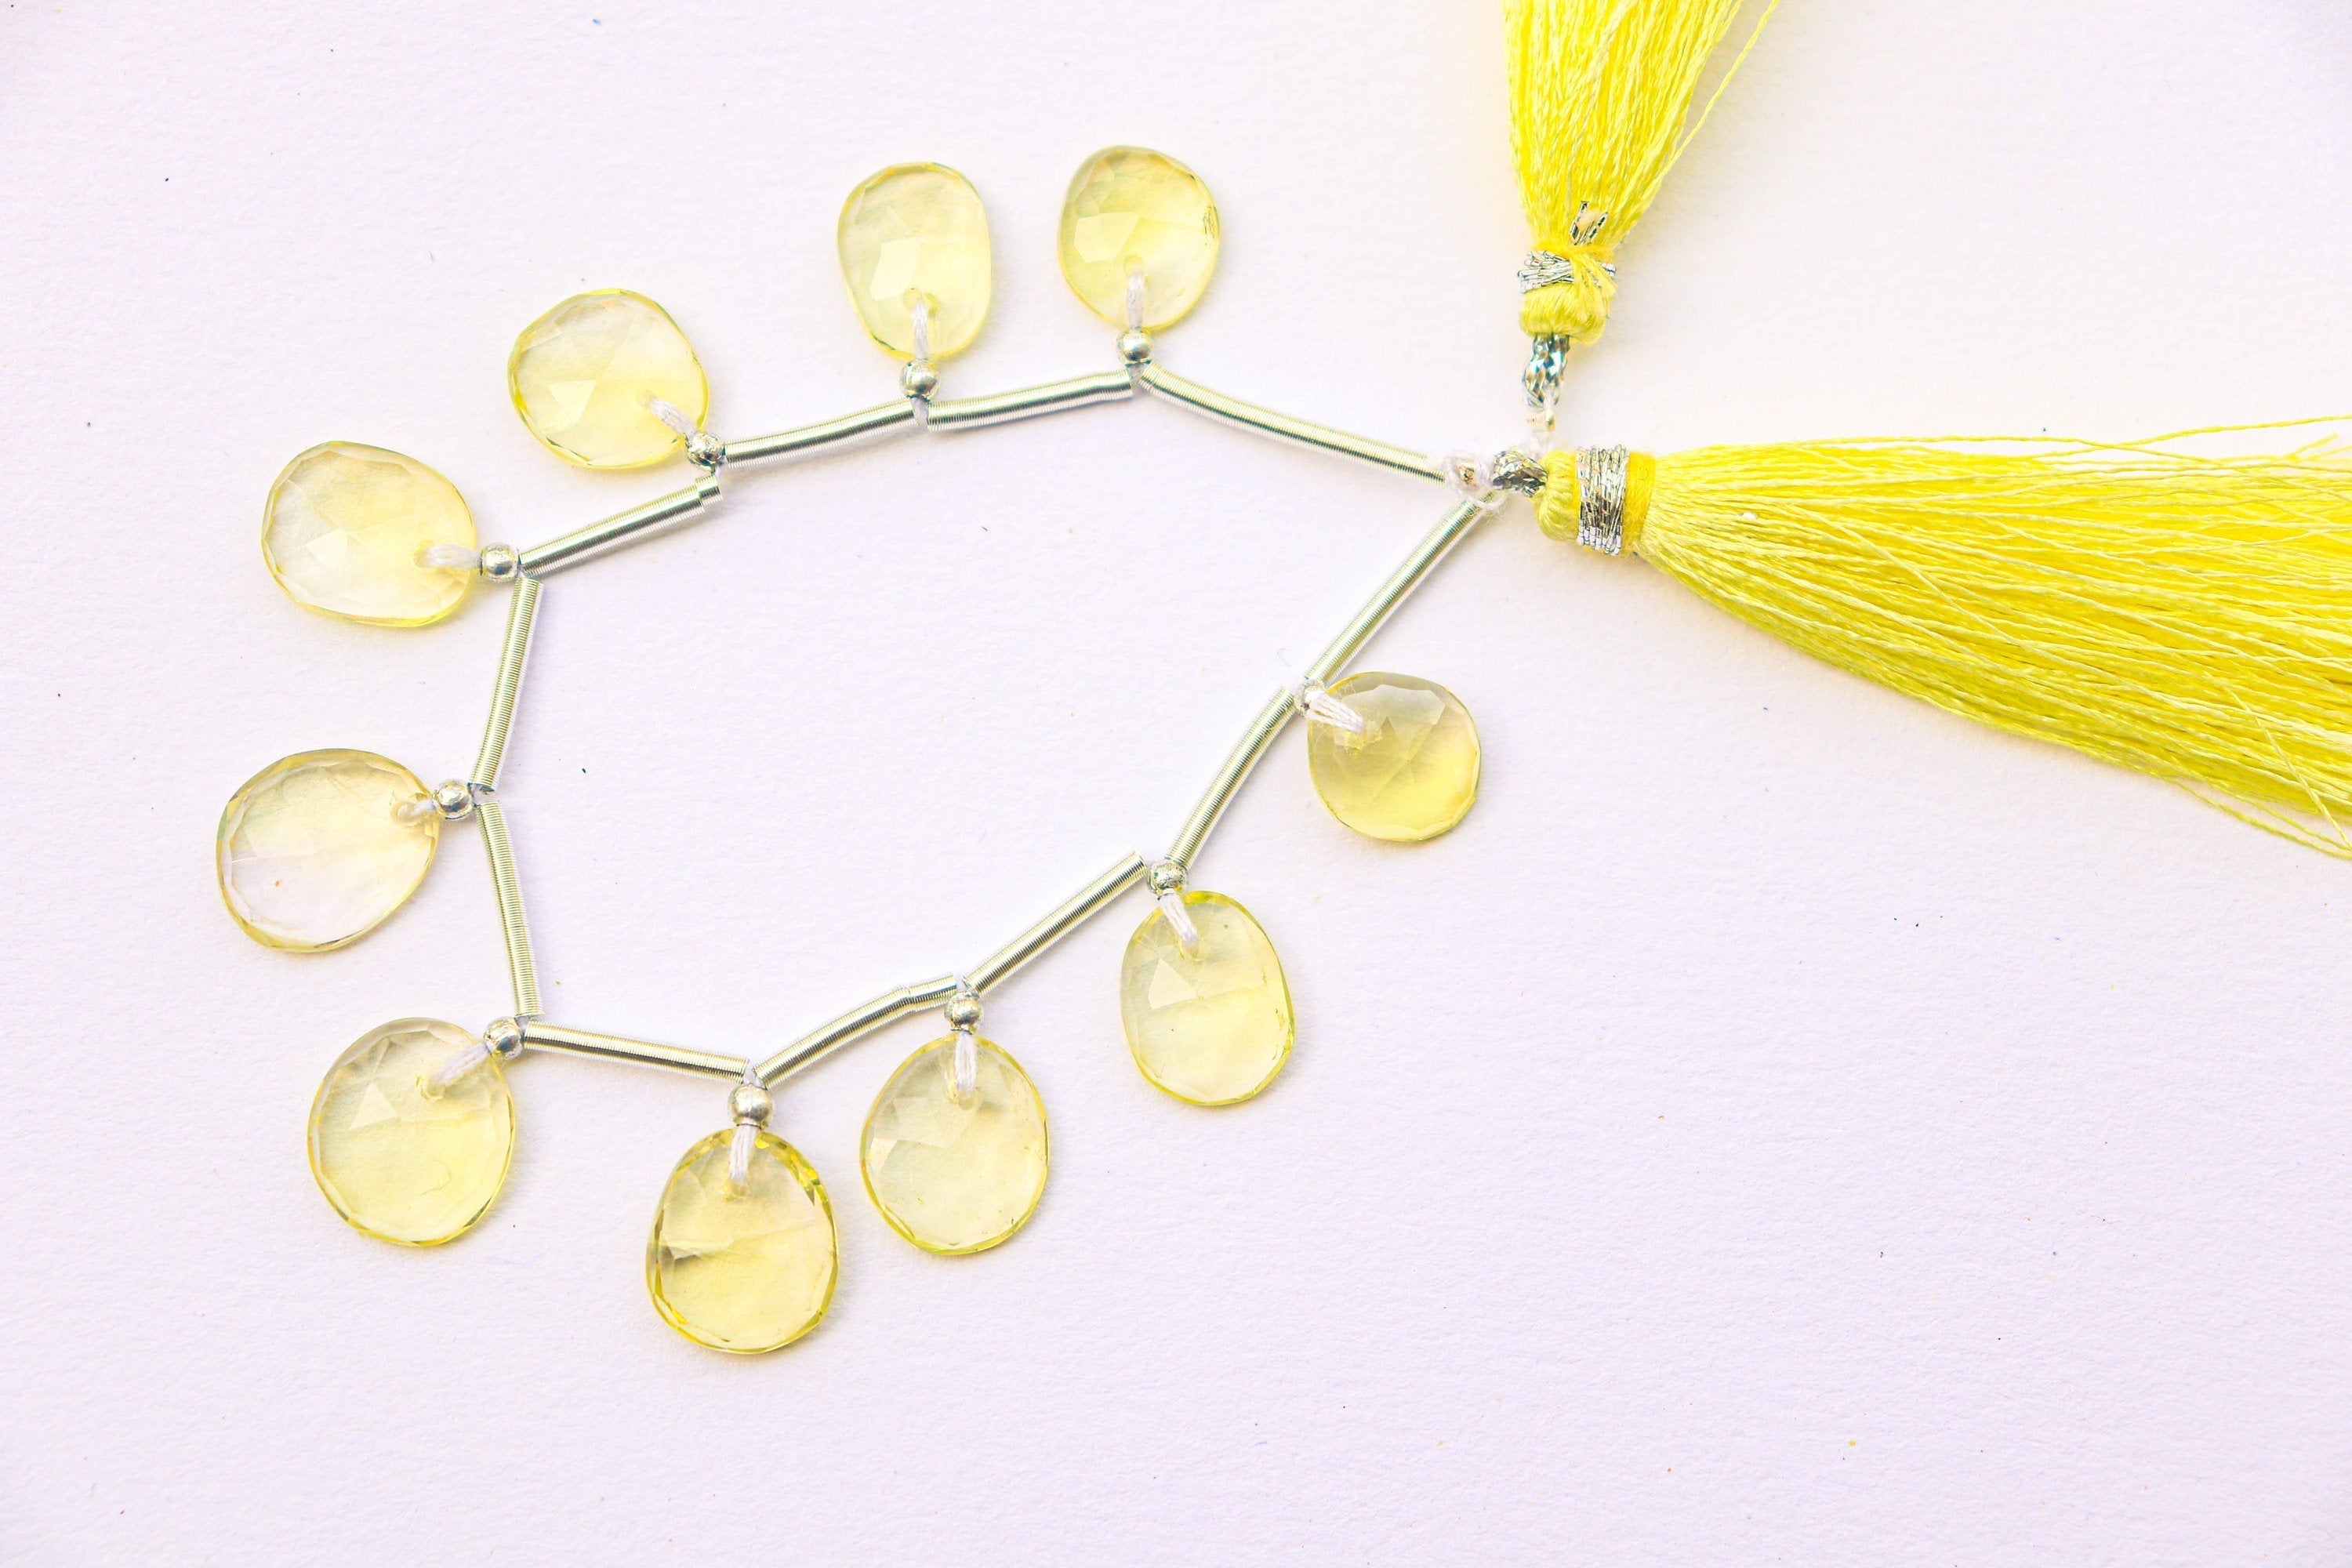 Lemon Quartz Faceted Uneven Shape Rose cut Briolette Beads | 10 Pieces | Natural Lemon quartz Gemstone Beads | Beadsforyourjewelry BFYJ1196-2 Beadsforyourjewelry